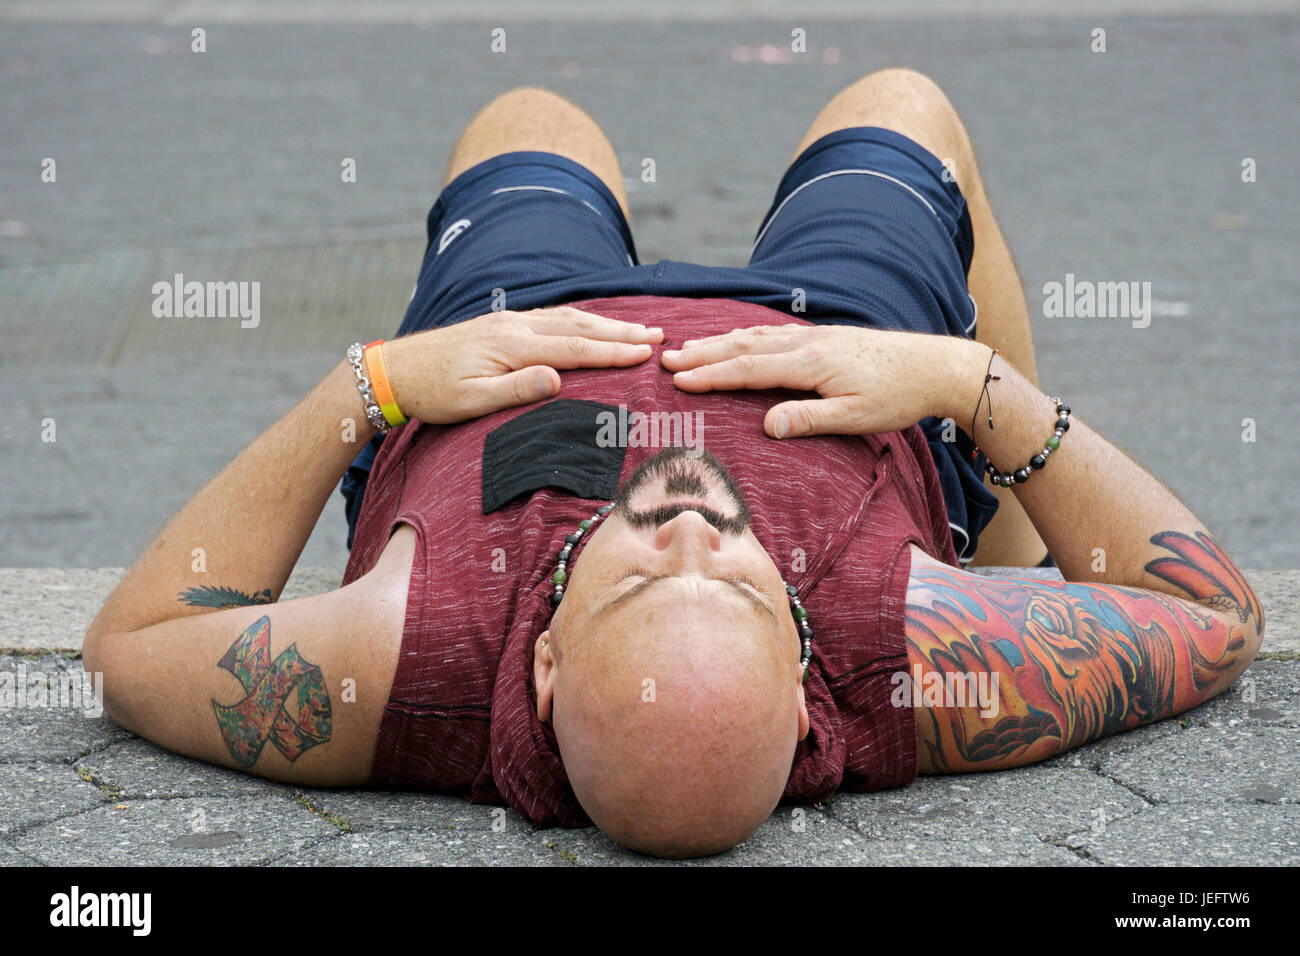 Foto de un hombre descansando con tatuajes, vistiendo un tank top fotografiado desde un ángulo inusual. Foto de stock